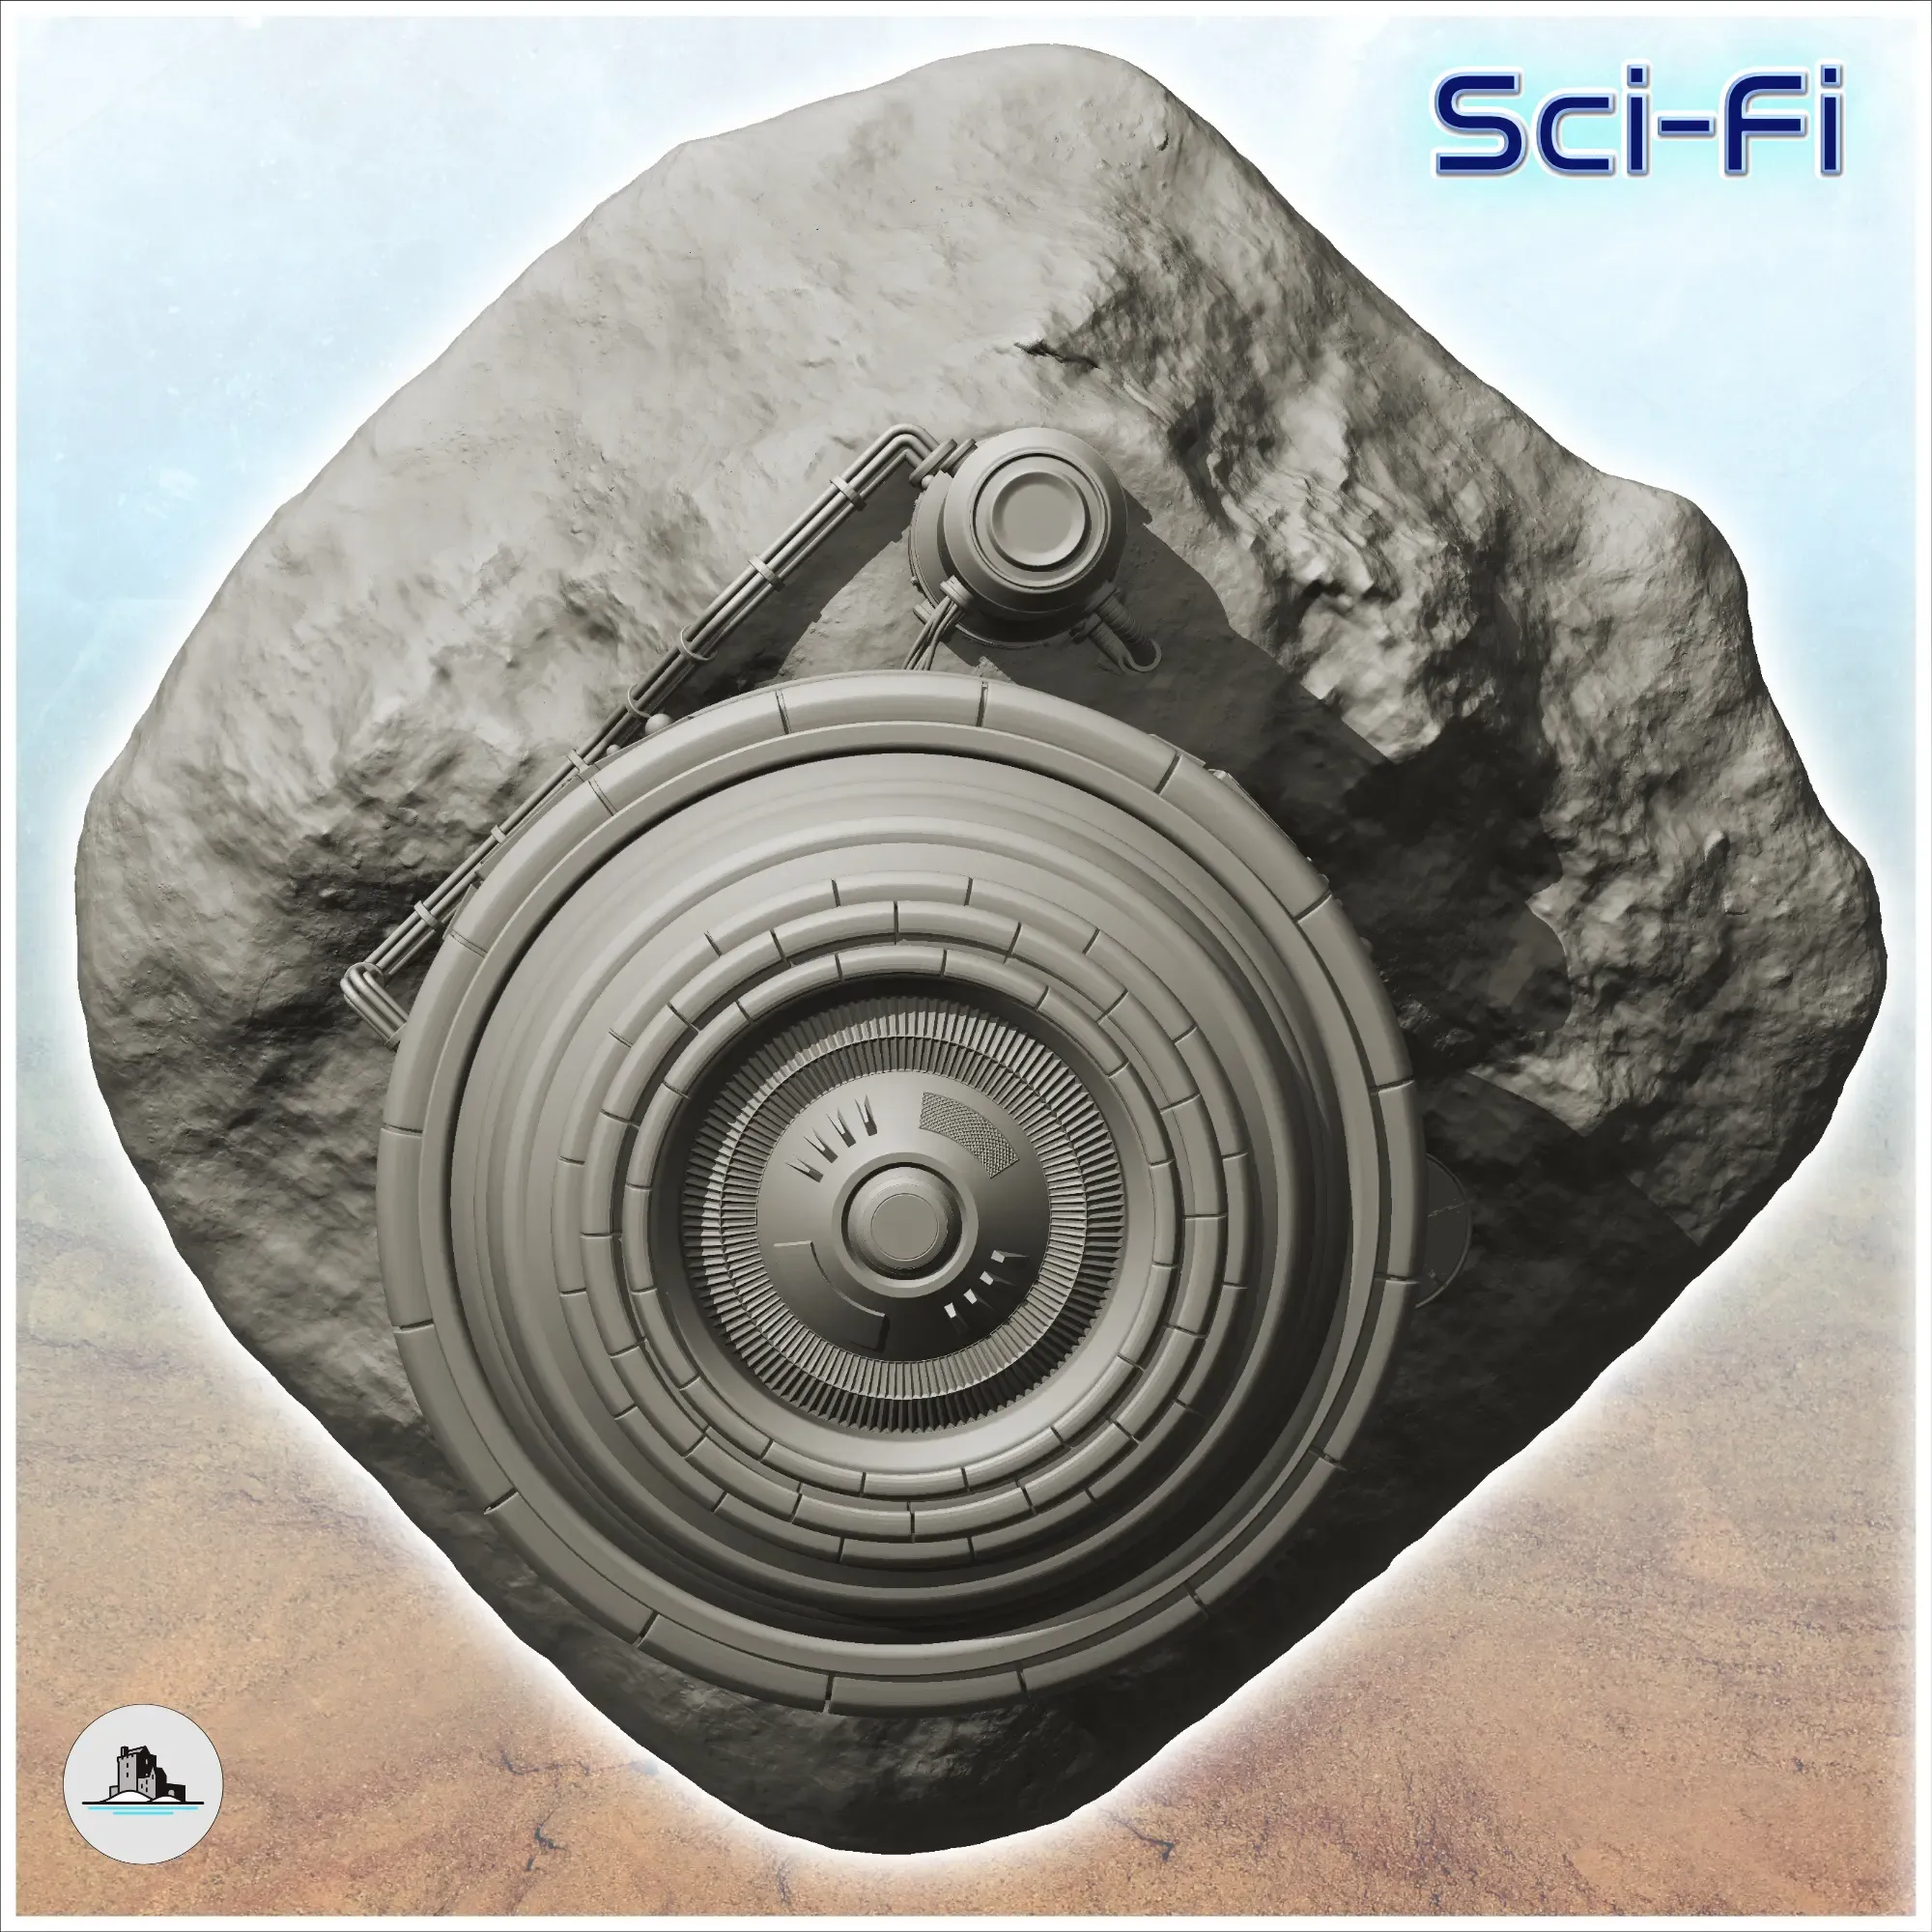 Energy sensor on rock - Terrain Scifi Science fiction SF